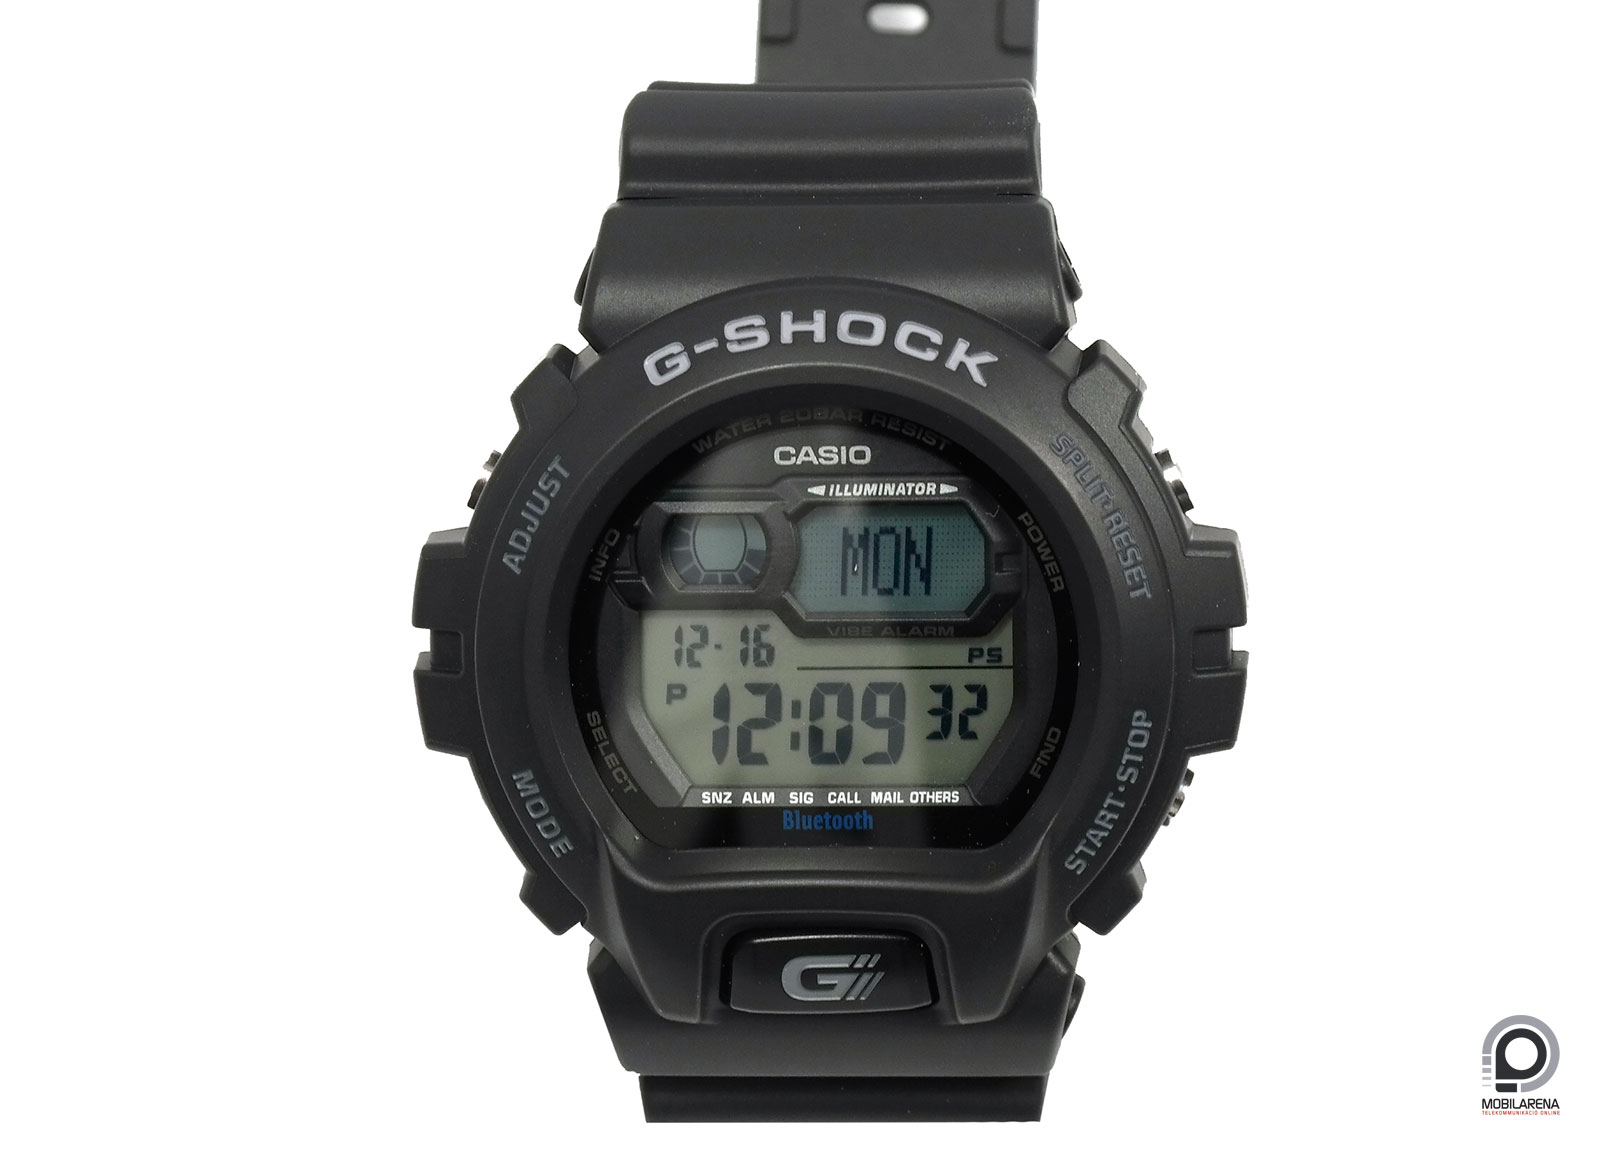 Casio G-Shock GB-6900B - sportosság - Mobilarena Tartozékok teszt